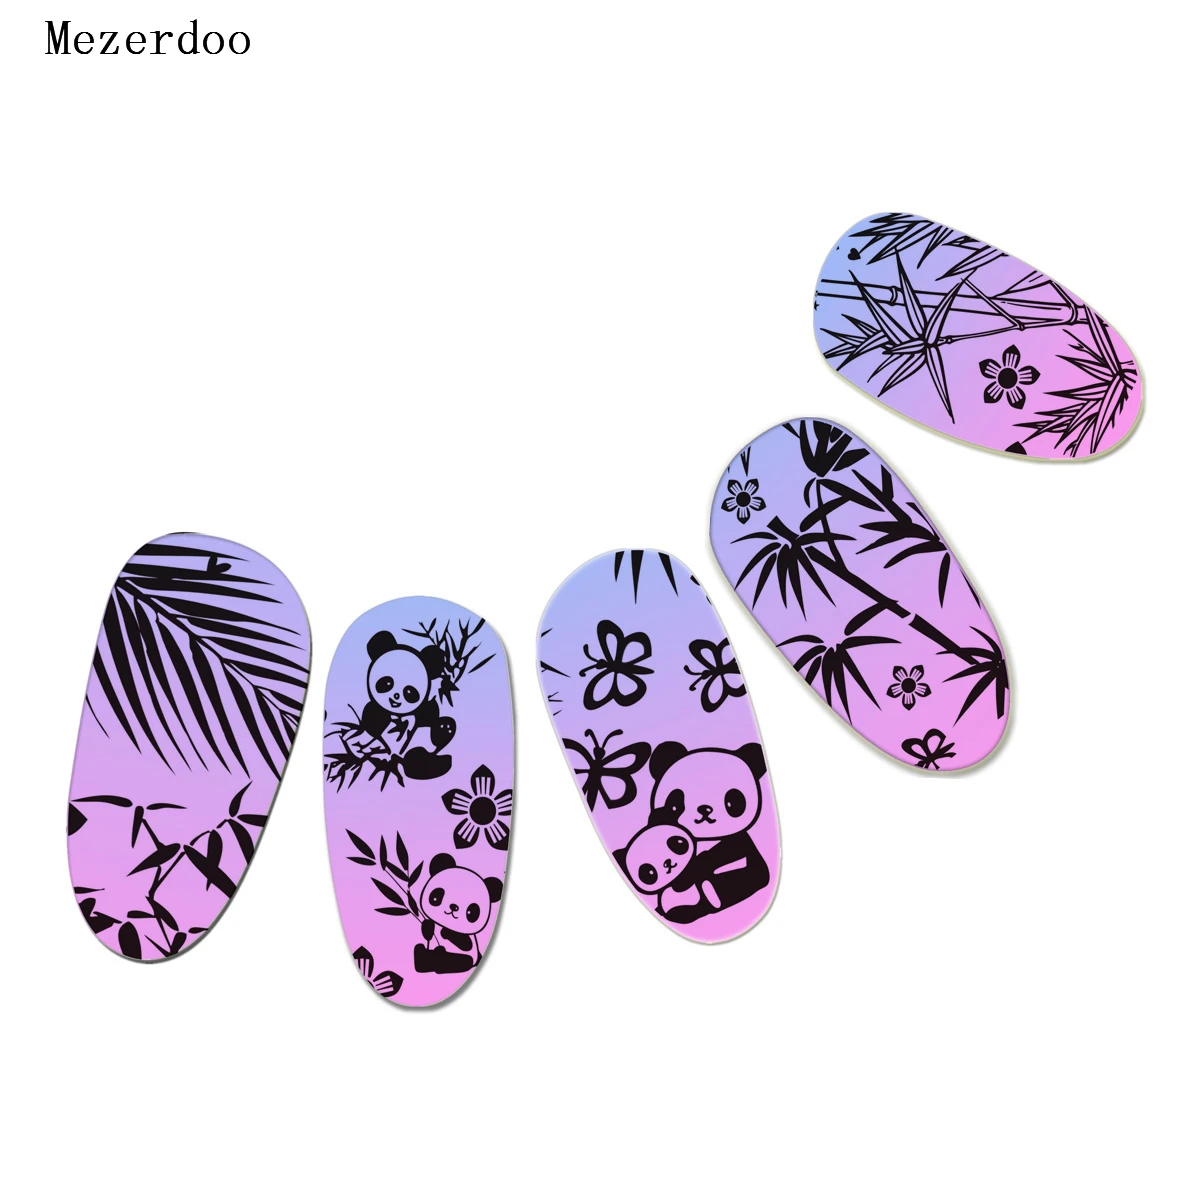 10 шт. дизайн ногтей пластины 6*12 см для ногтей штамповки кружева цветок панда дизайн животных женское Изображение Шаблон Печать Дизайн ногтей DIY маникюр